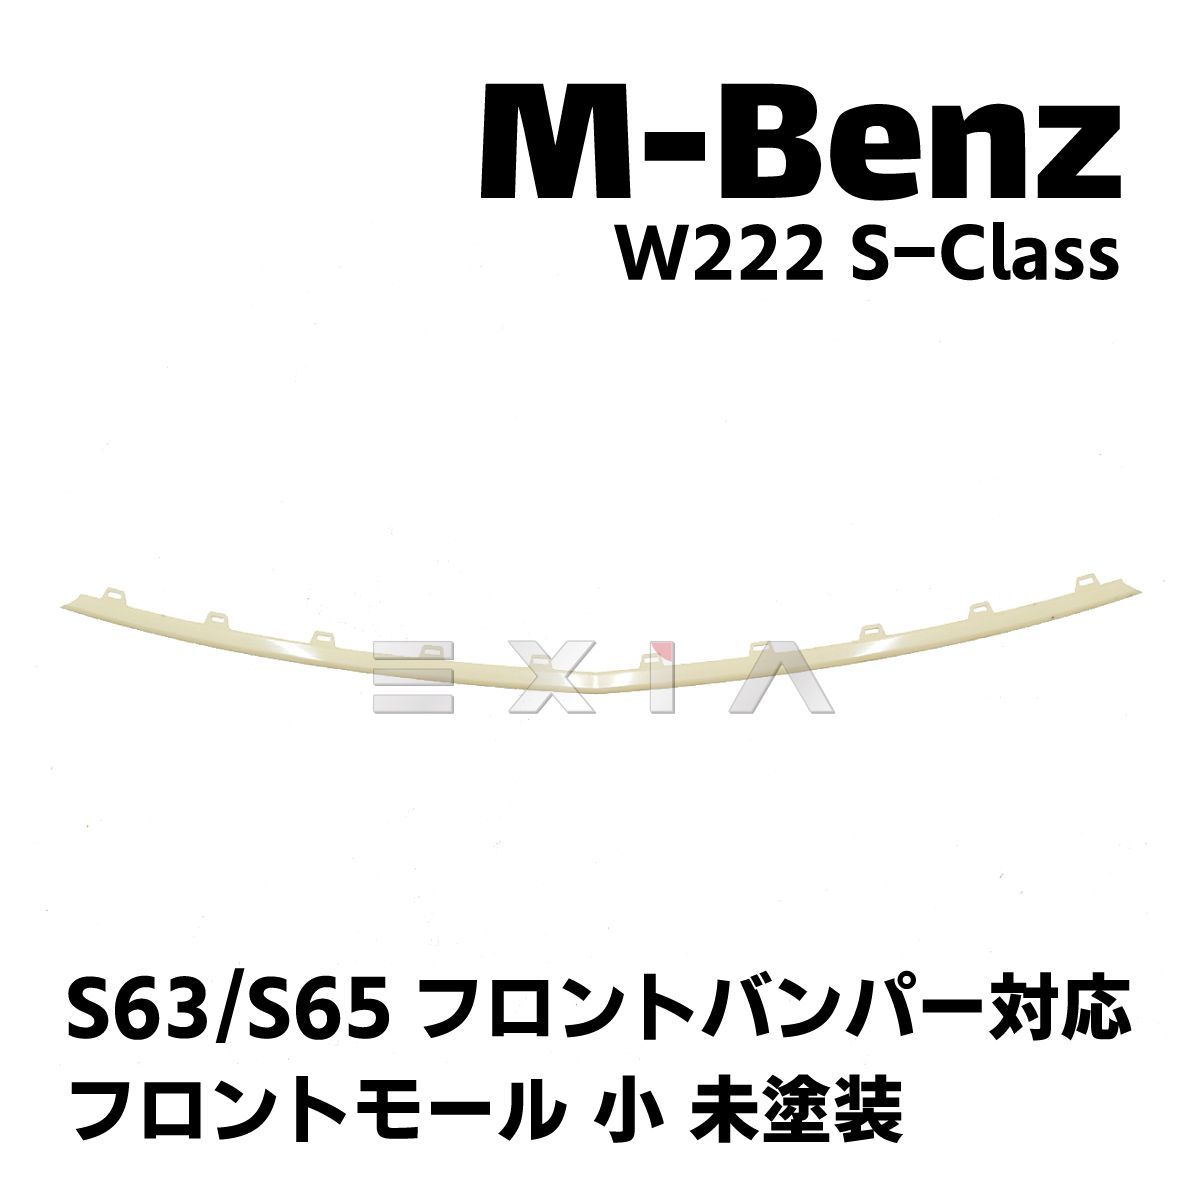 MercedesBenz メルセデスベンツ W222 Sクラス 前期 S63/S65バンパー対応 フロントモール 小 未塗装 素地 カスタム 修理  リペア 補修 AMG 社外品 OEM 部品 パーツ